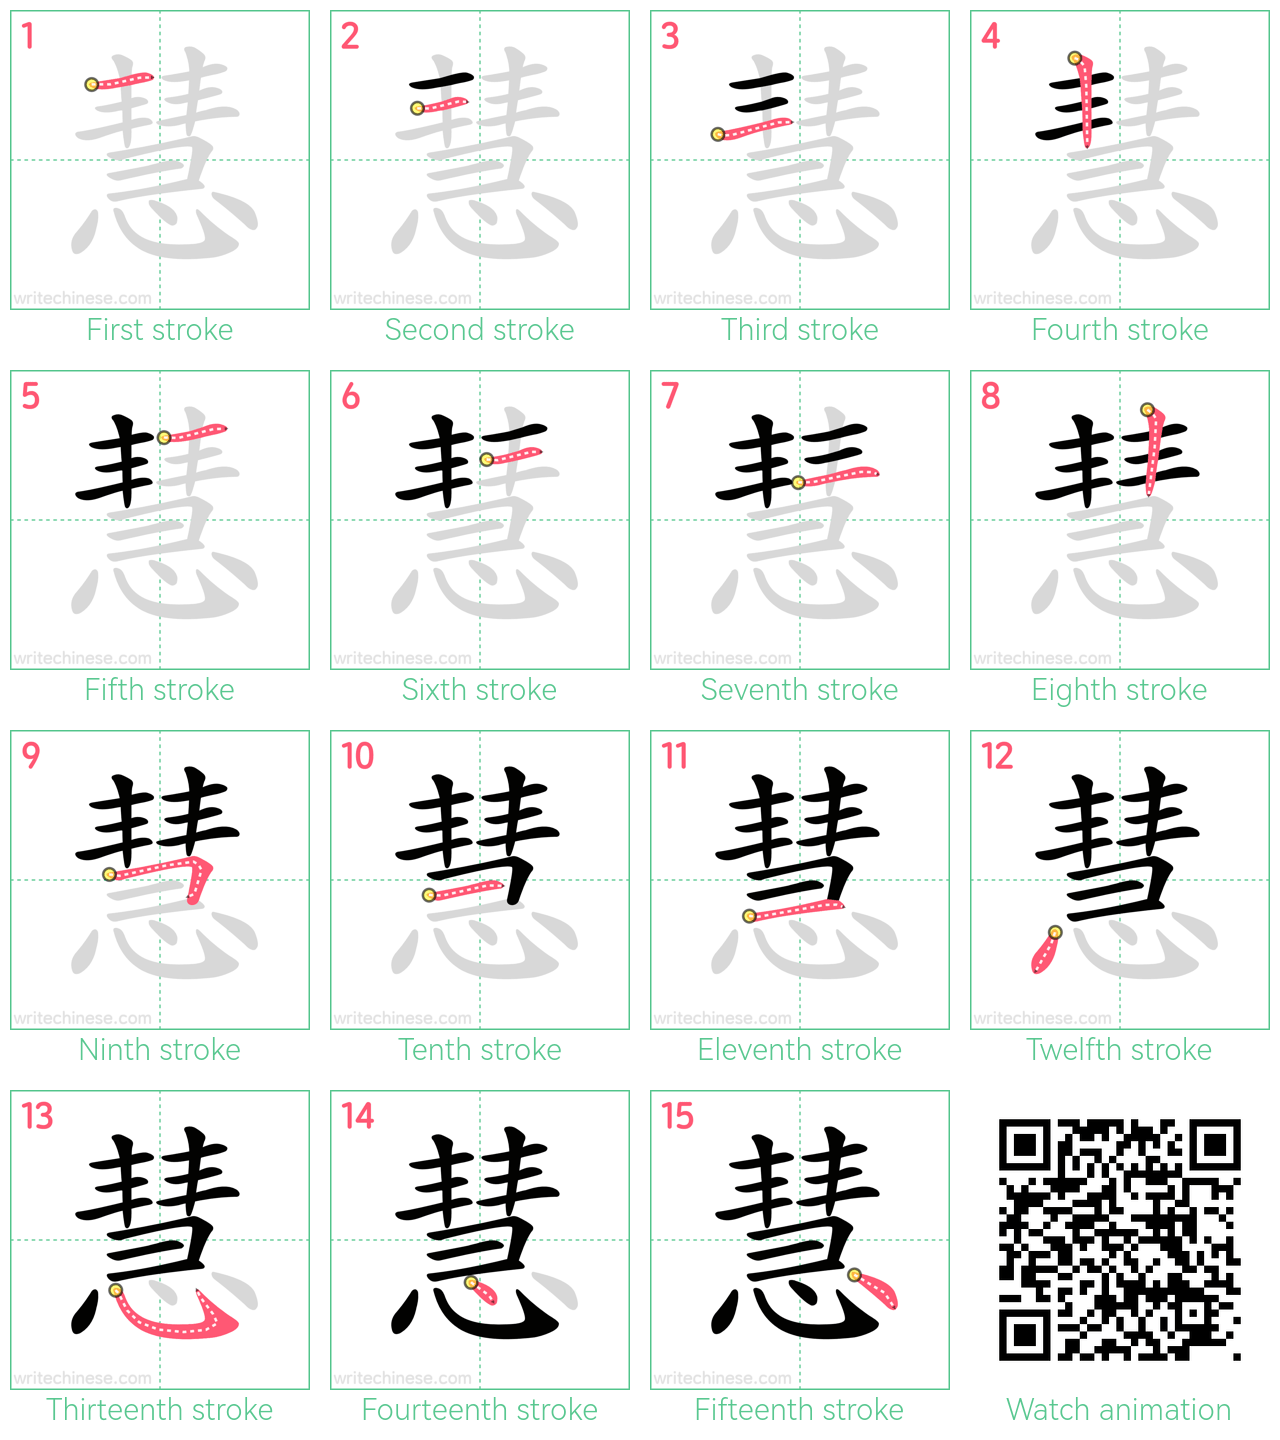 慧 step-by-step stroke order diagrams